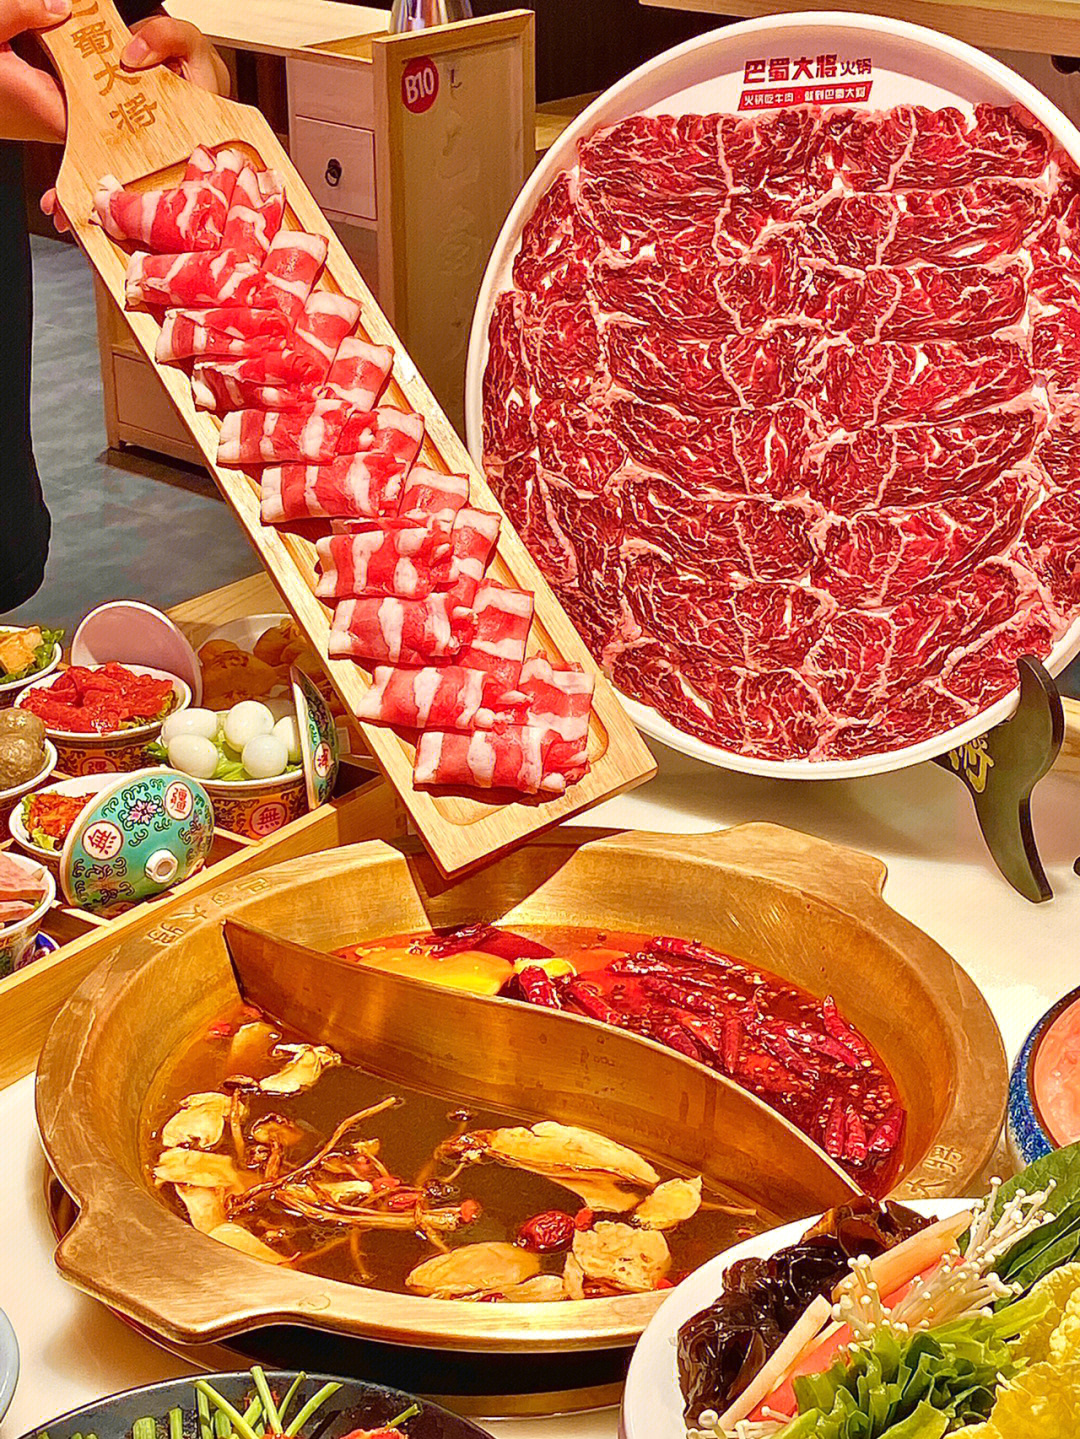 73手切鲜牛肉牛肉一片片放在盘子里90度摆放牛肉仍牢固在盘子非常的